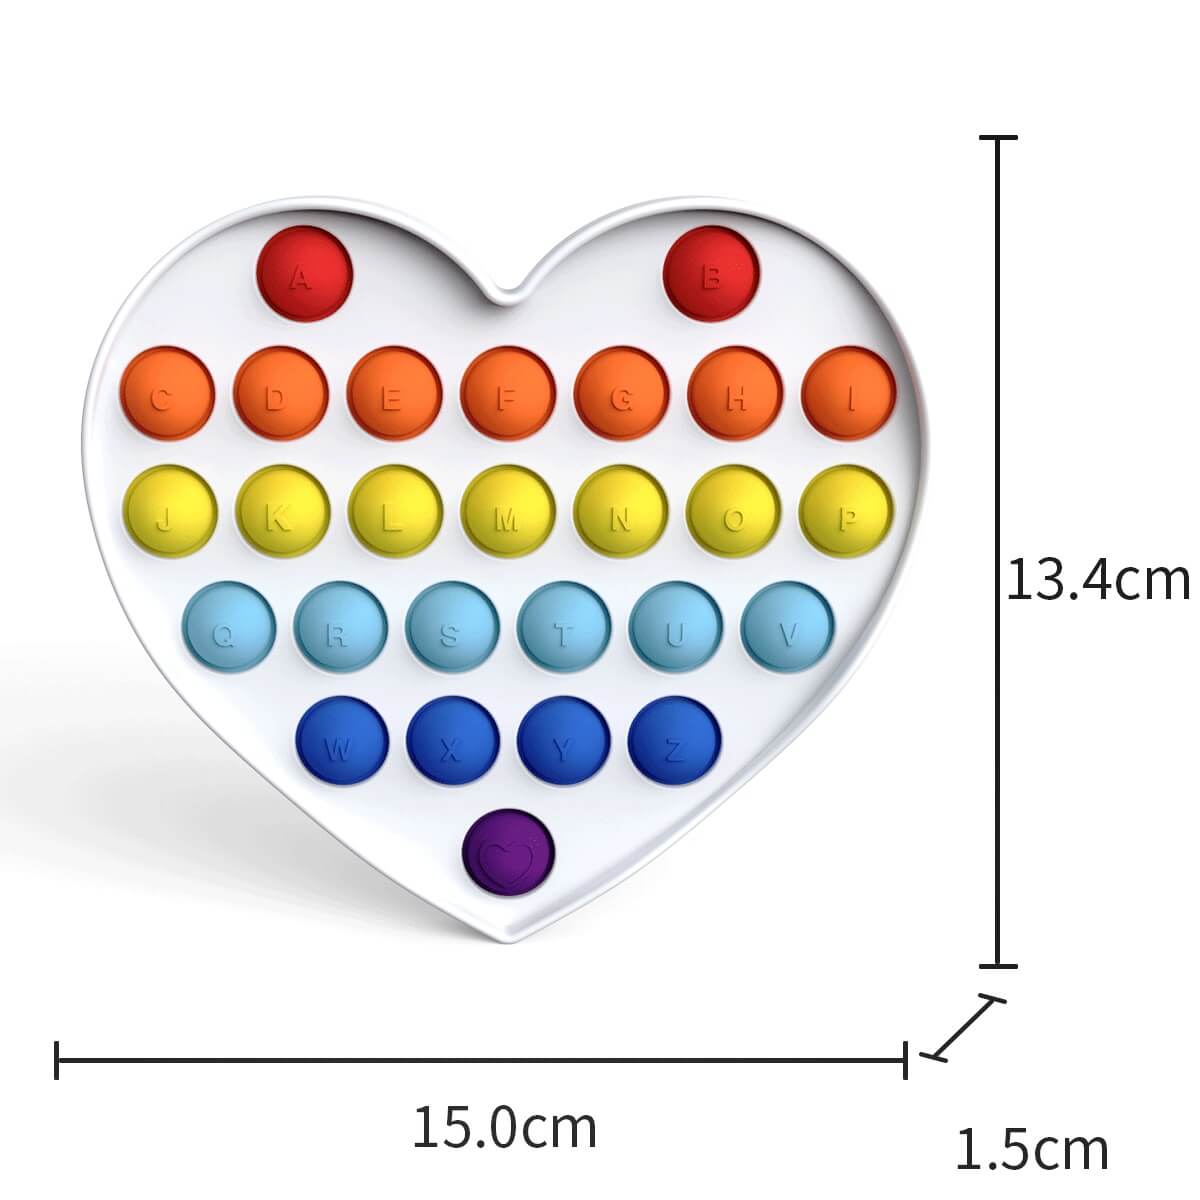 heart2-fidget-toy-size